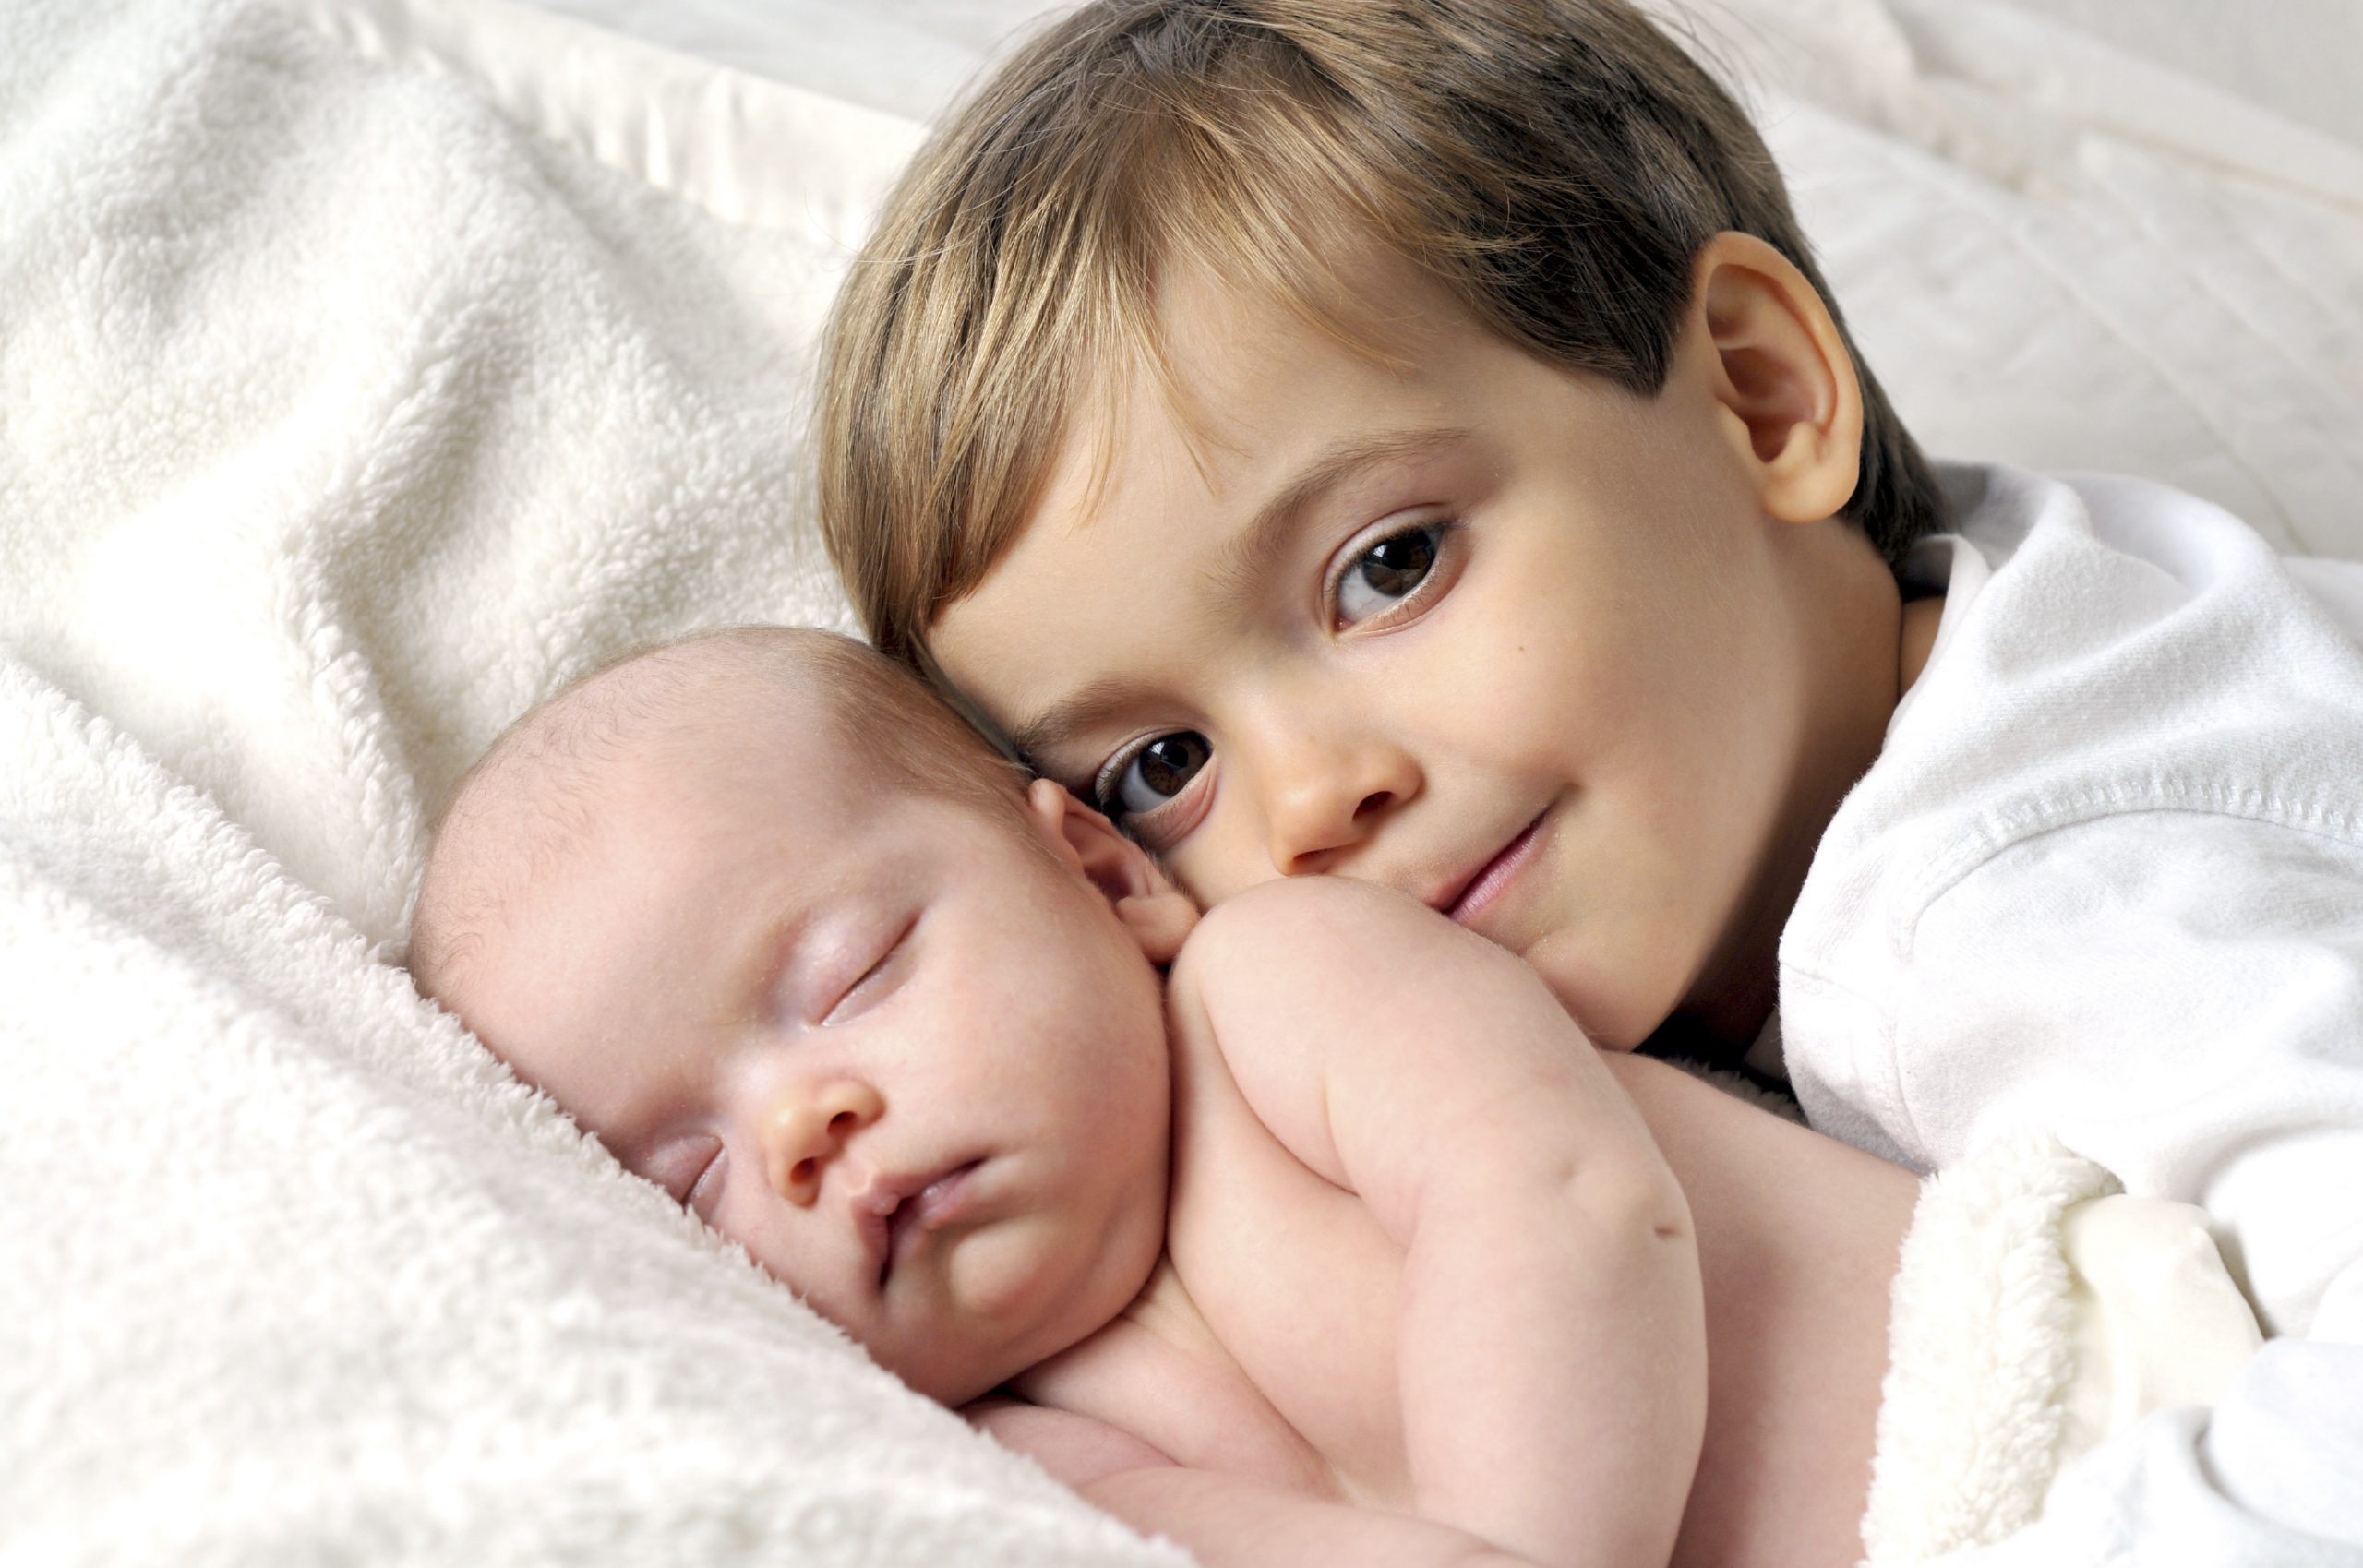 كيف أحمي طفلي الرضيع من إيذاء أخيه الأكبر؟